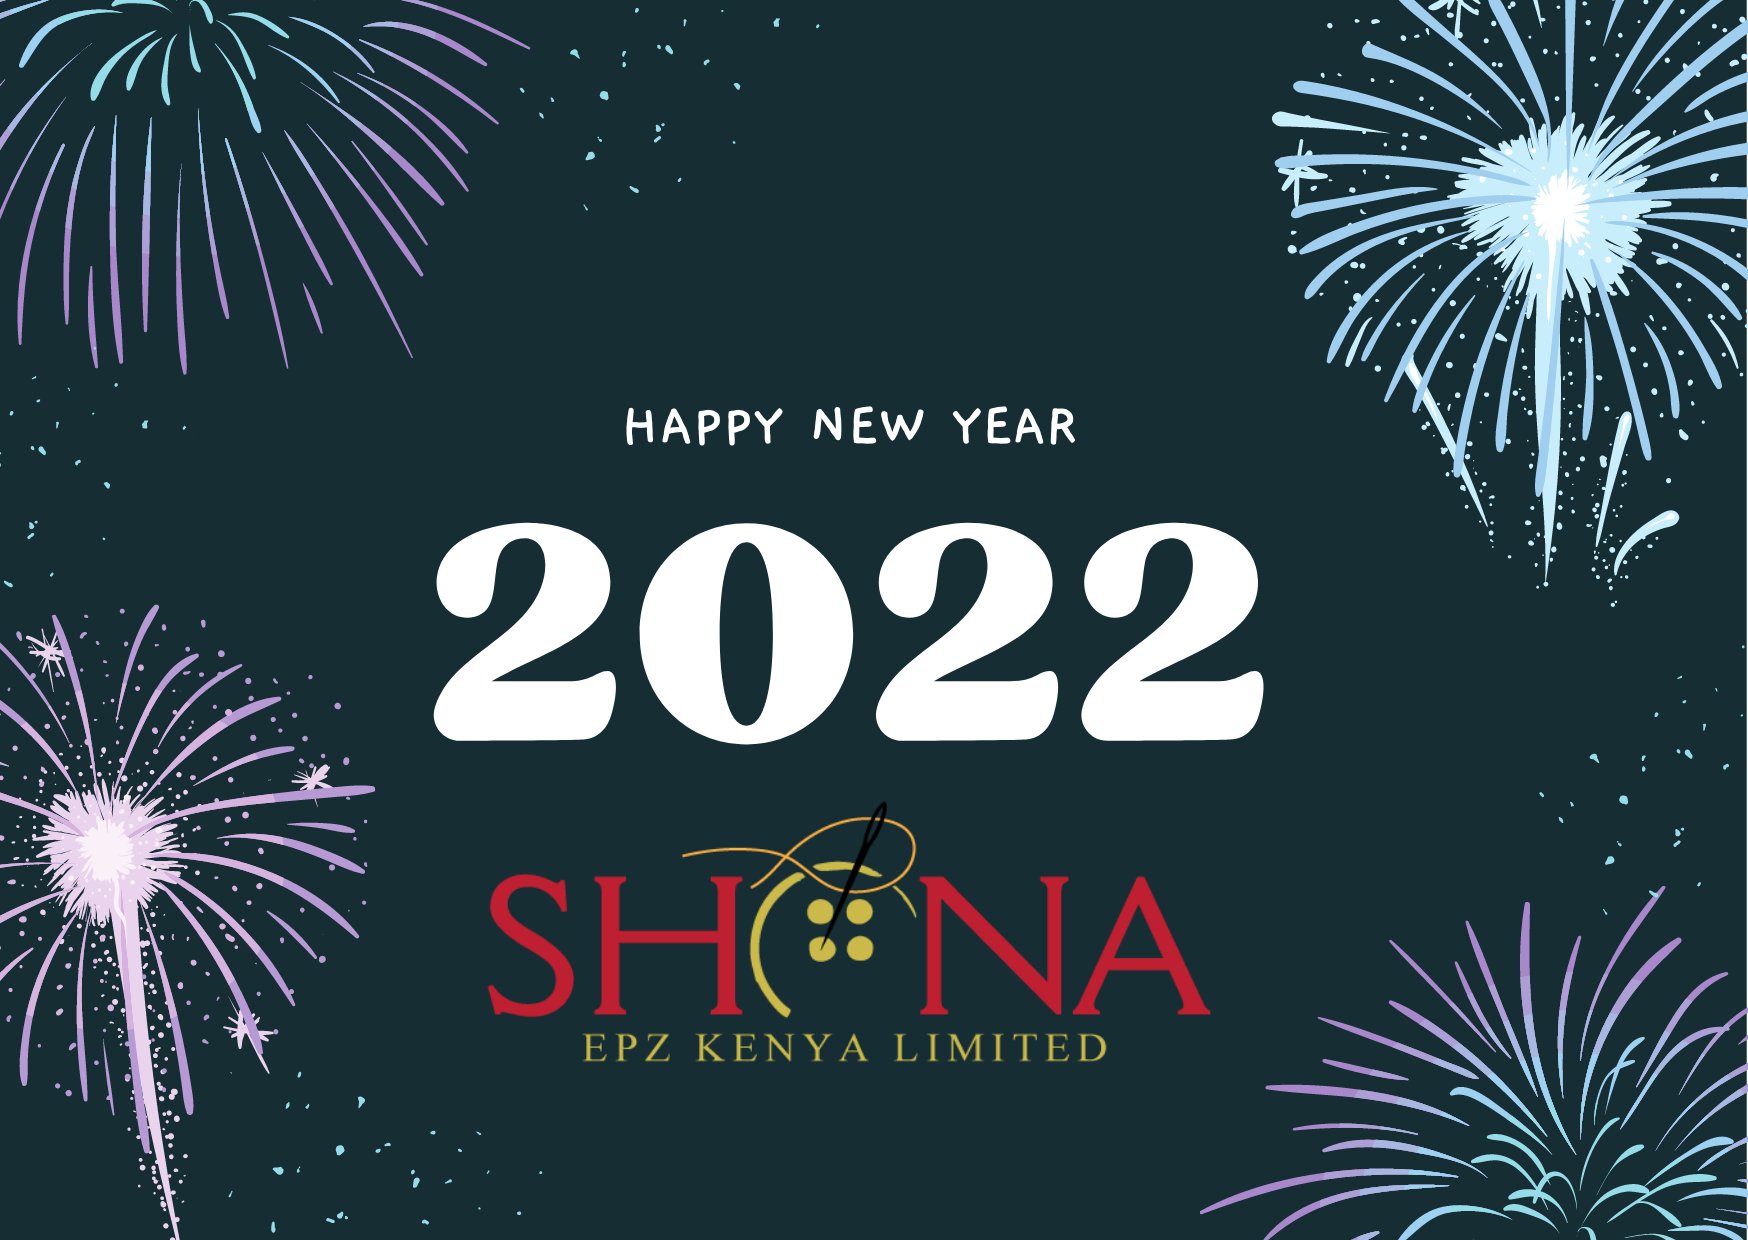 Shona EPZ Ltd (@Shonaepz) / Twitter